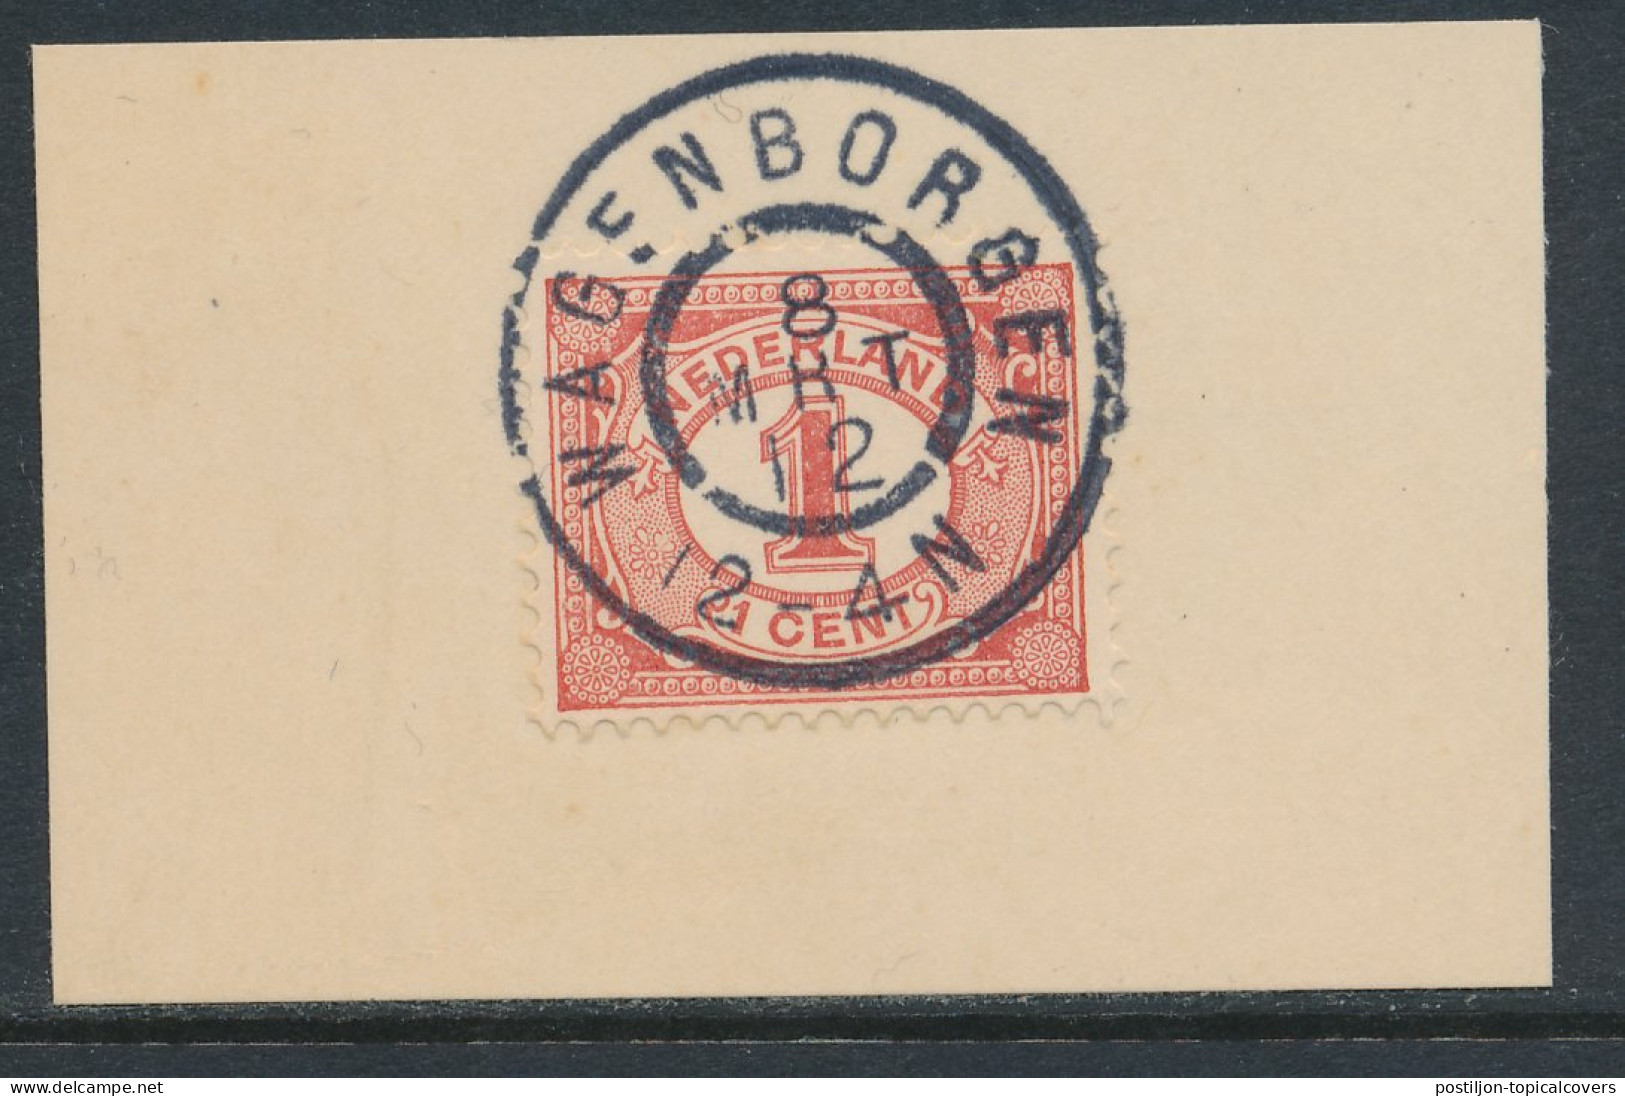 Grootrondstempel Wagenborgen 1912 - Poststempel